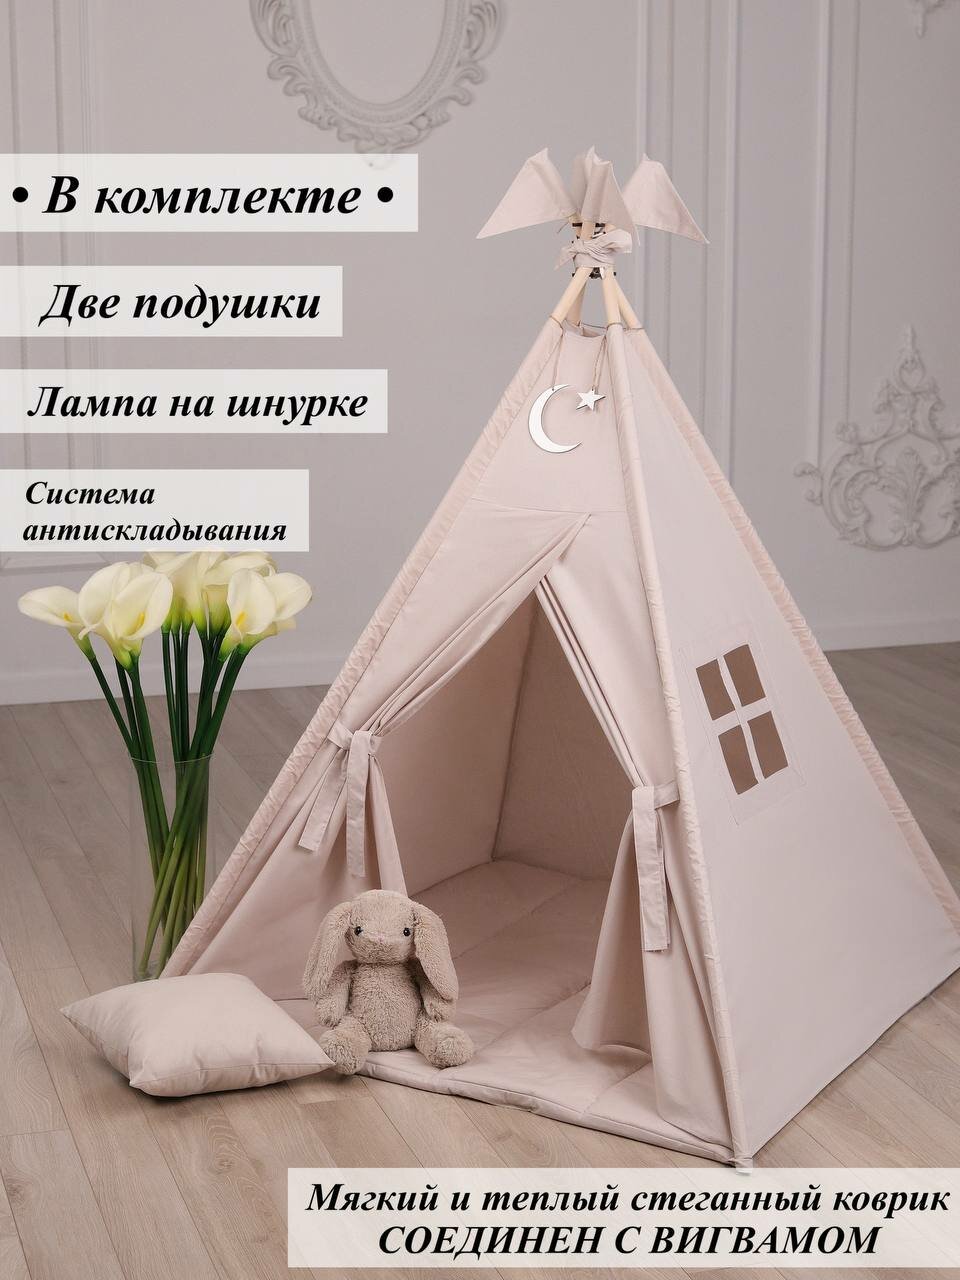 Вигвам игровая палатка домик для детей (лен/звезды месяц)